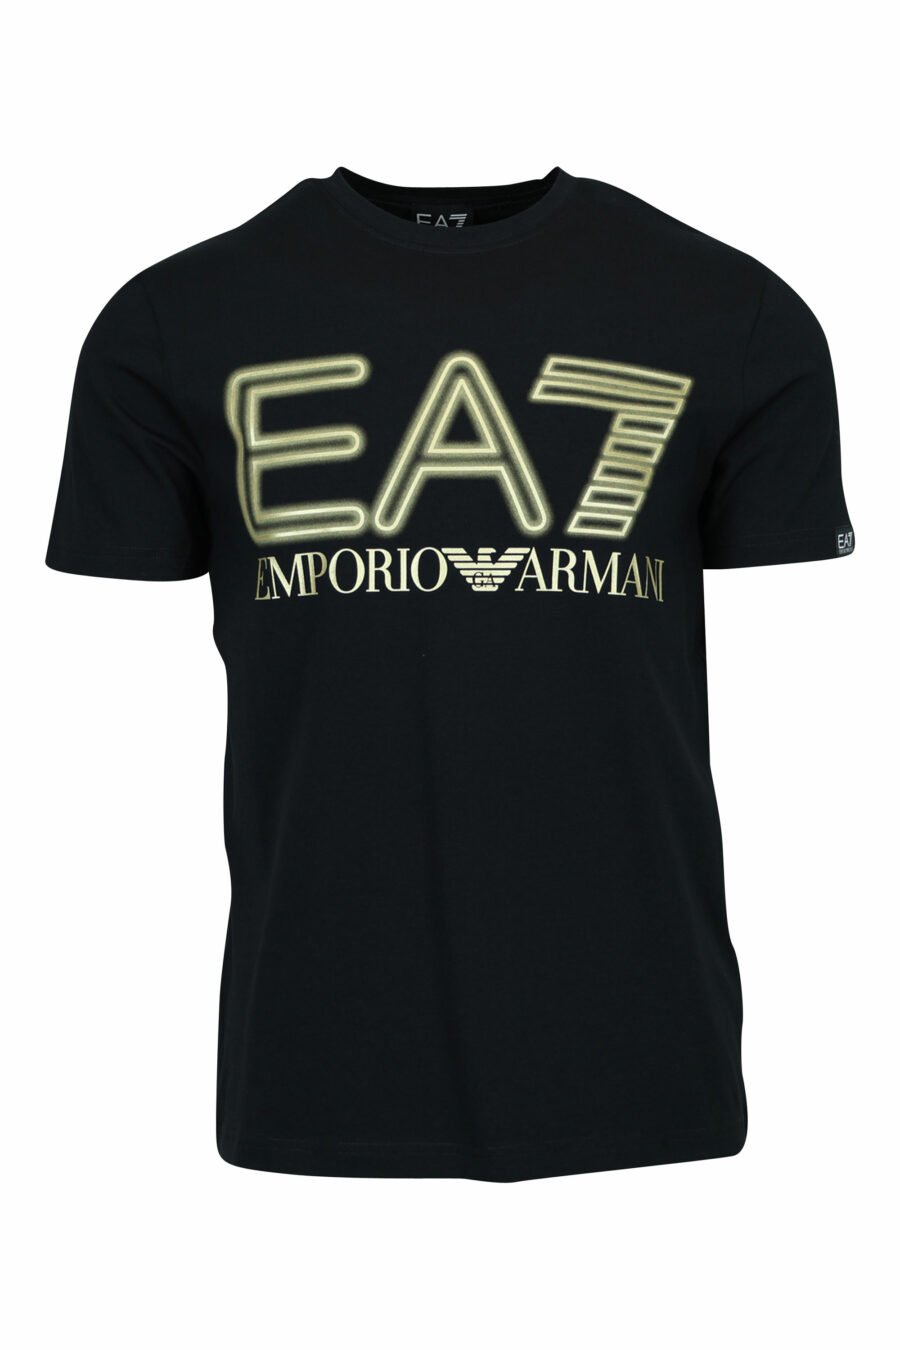 T-shirt noir avec maxilogo "lux identity" néon doré - 8057970672234